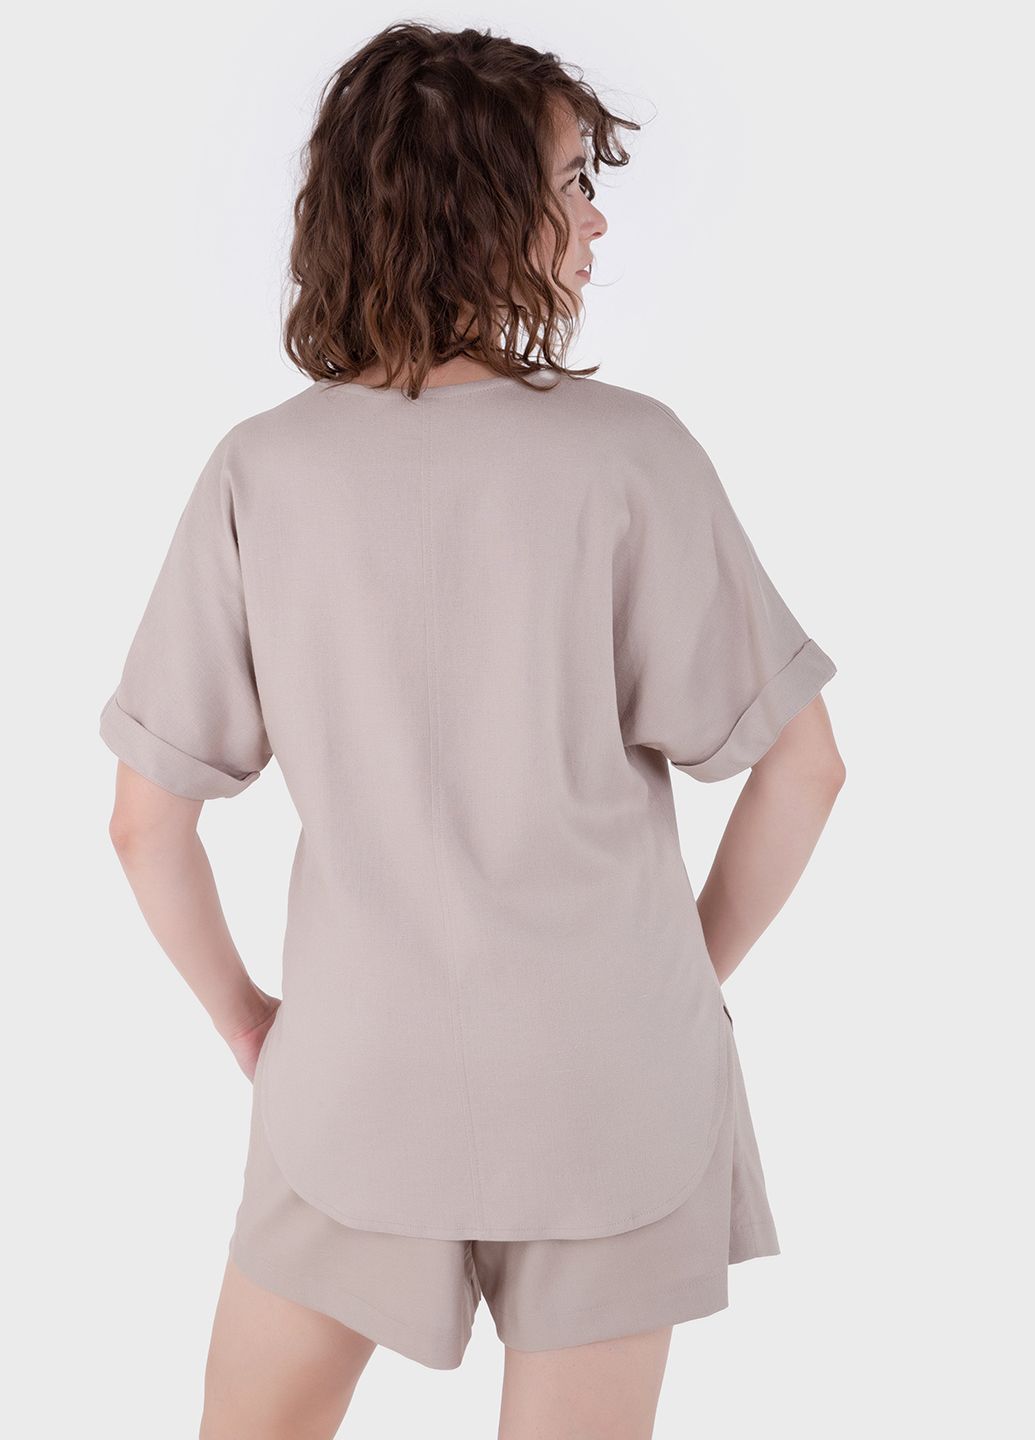 Купить Оверсайз льняная футболка женская бежевого цвета Merlini Лацио 800000036, размер 42-44 в интернет-магазине